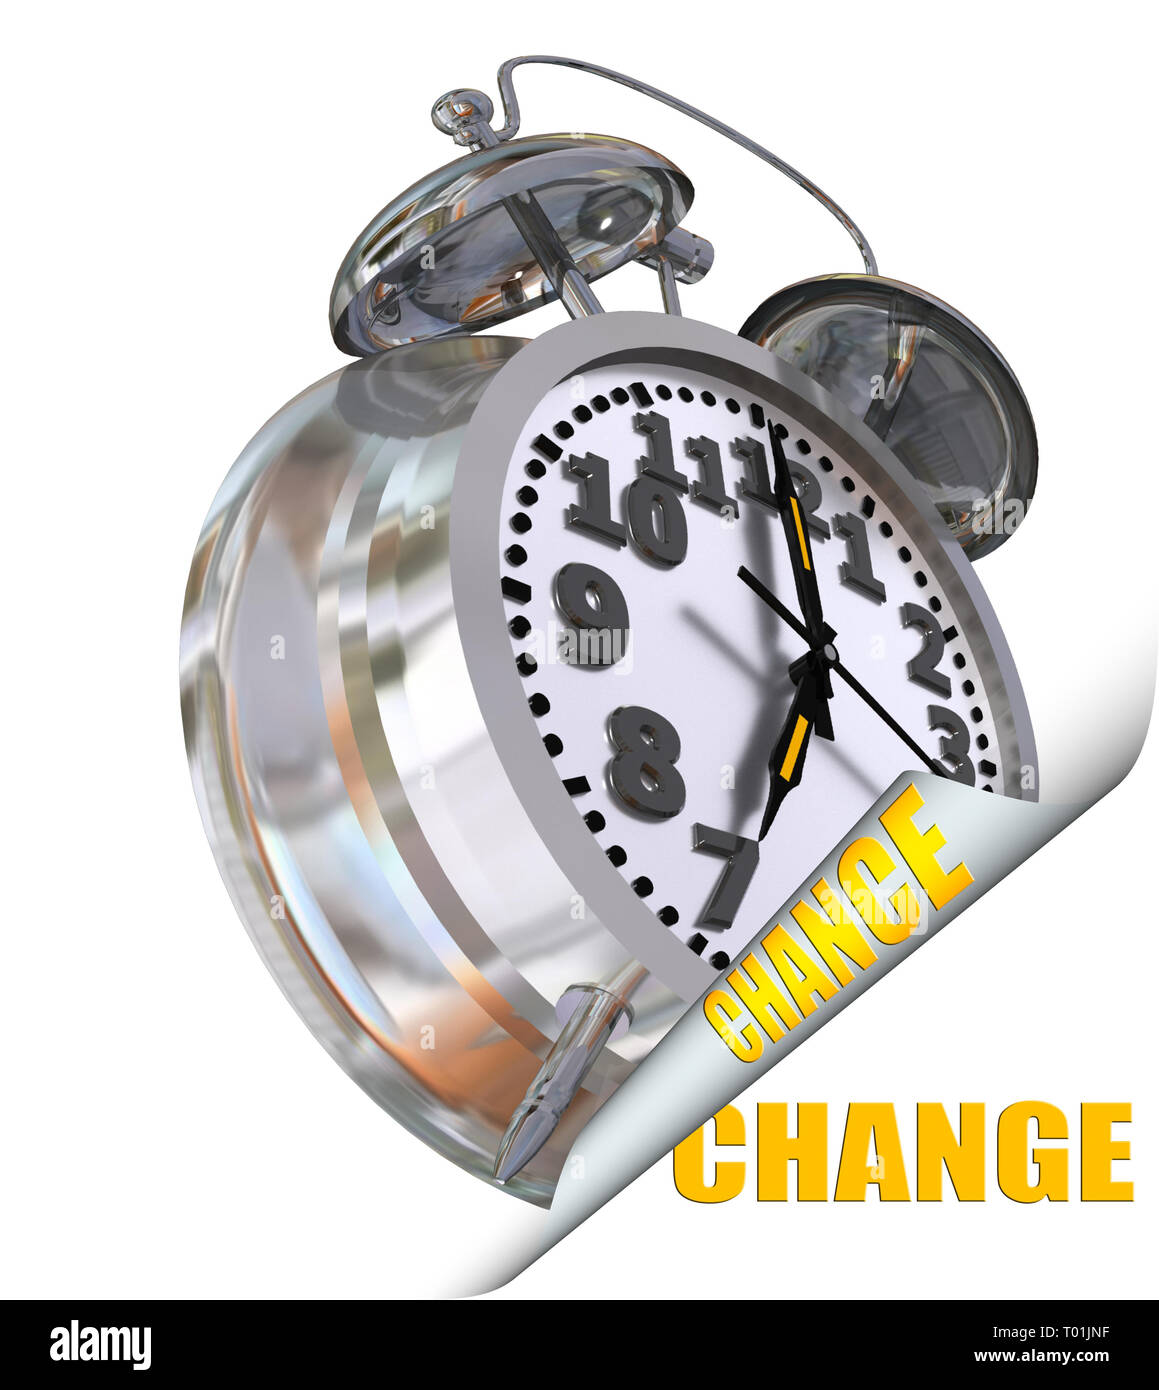 Chance de changement de l'horloge 7 tourner la page nouvelle ère - 3D Rendering Banque D'Images